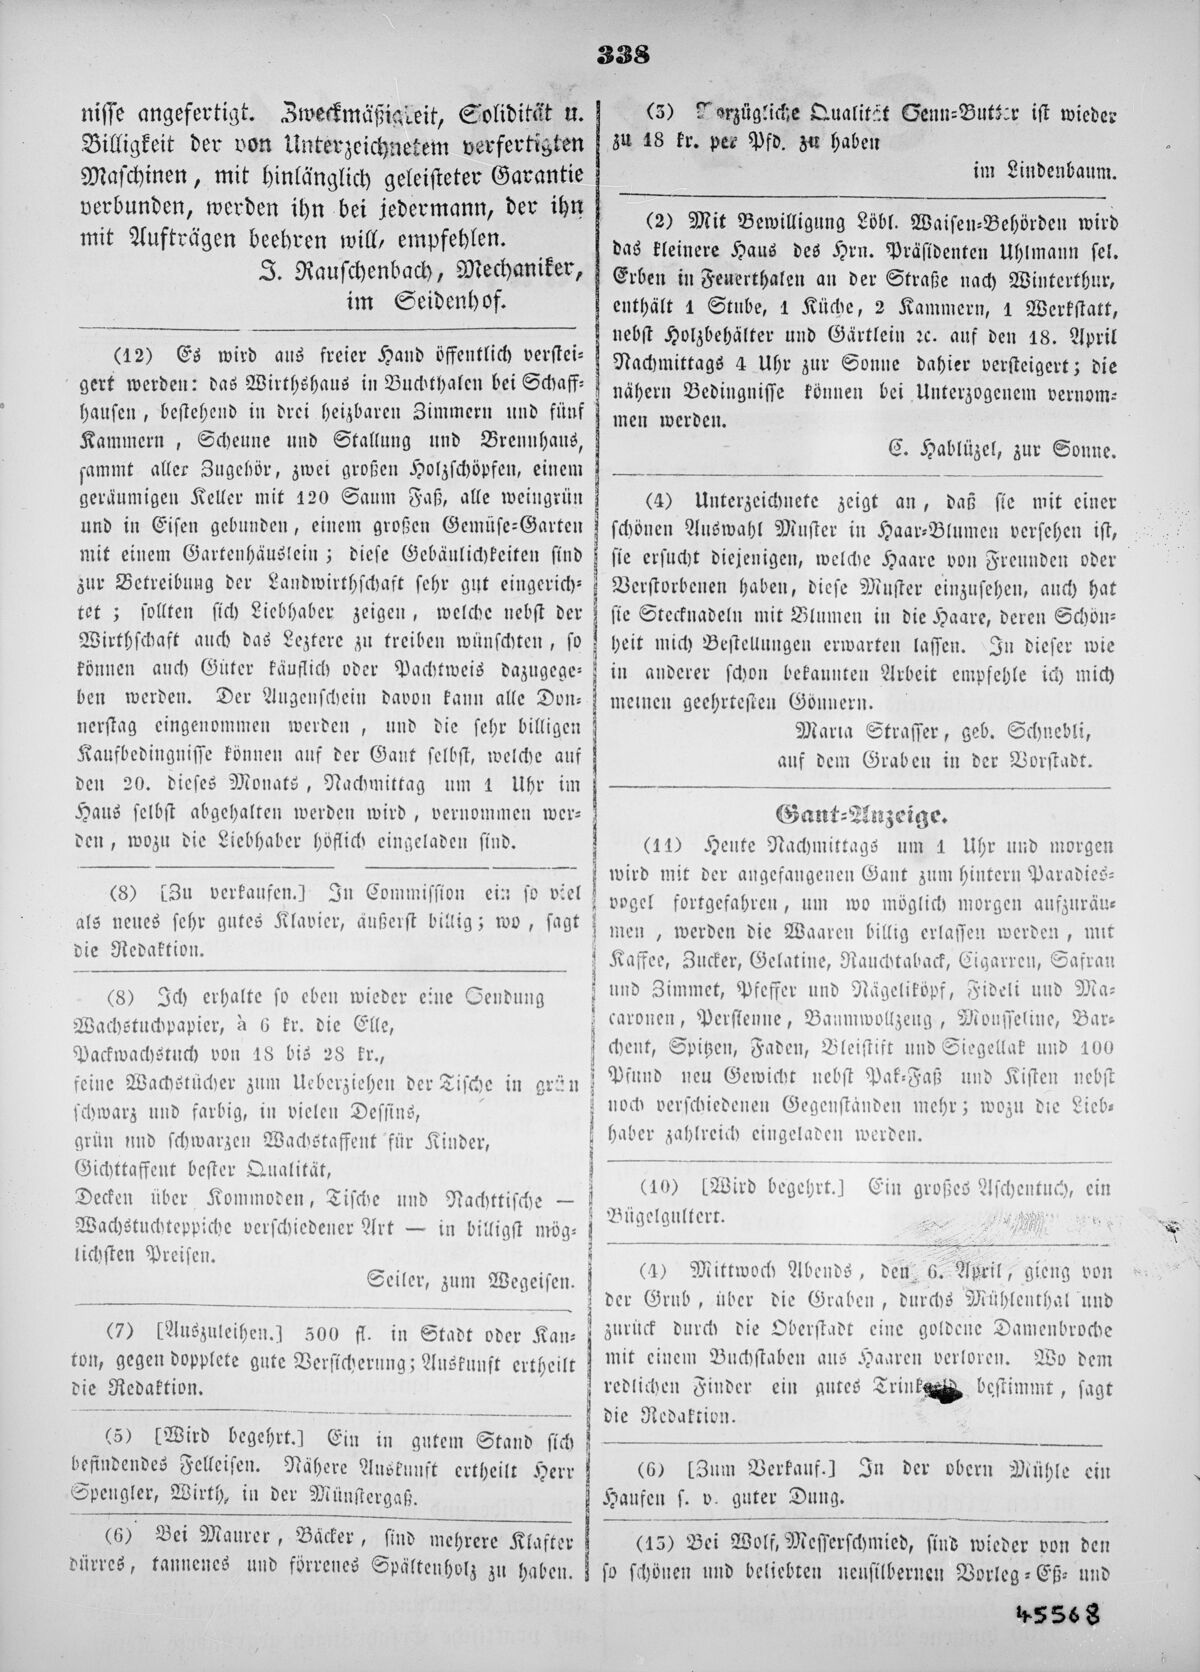 GFA 16/45568: Abbildung eines Zeitungsartikels, dass GF Maschinen produziert, 1842